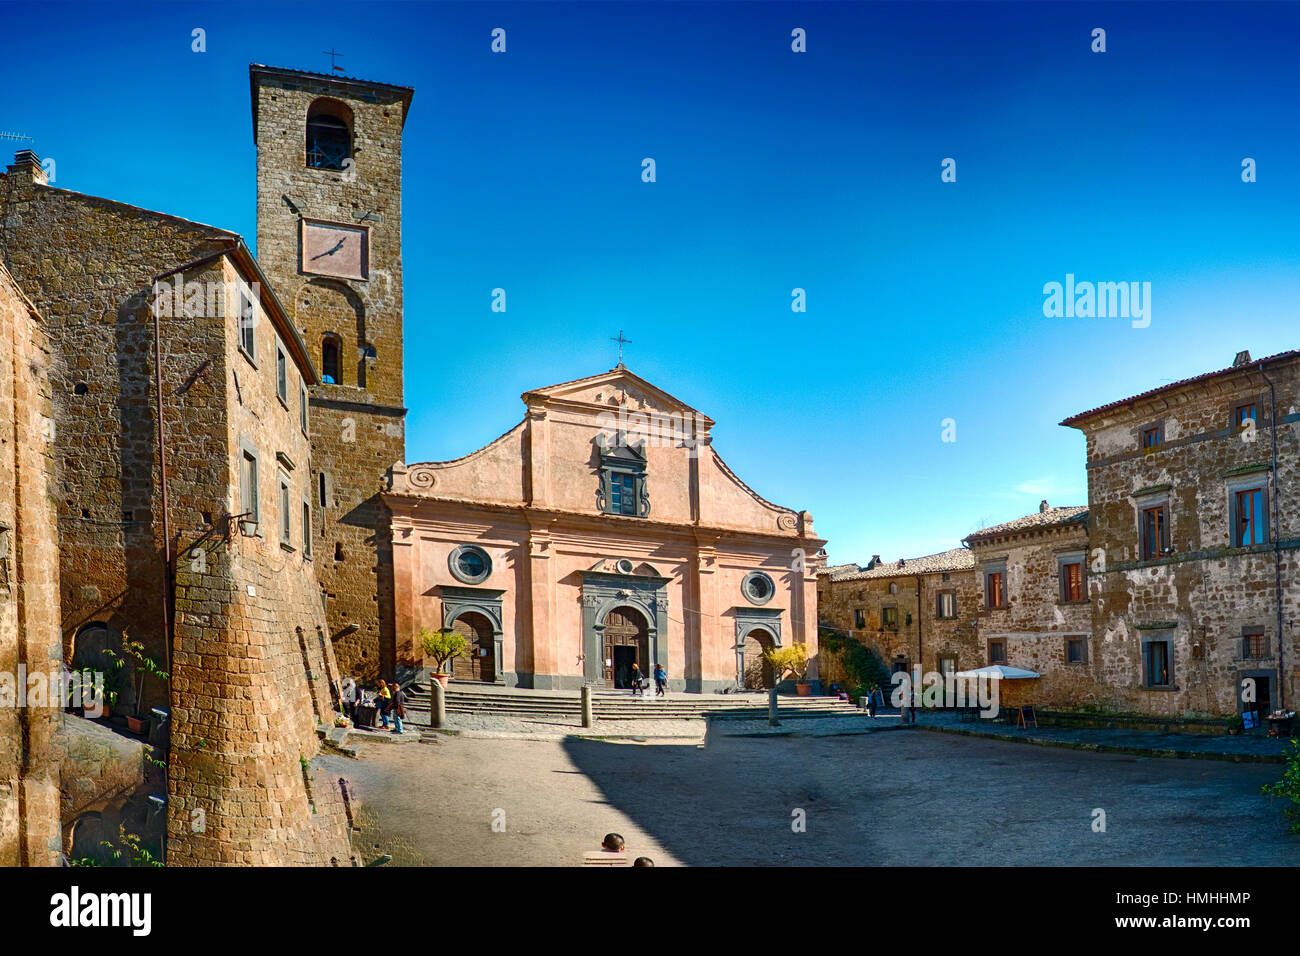 Place principale avec une église et un clocher, Civita di Bagnoregio, Ombrie, Italie Banque D'Images